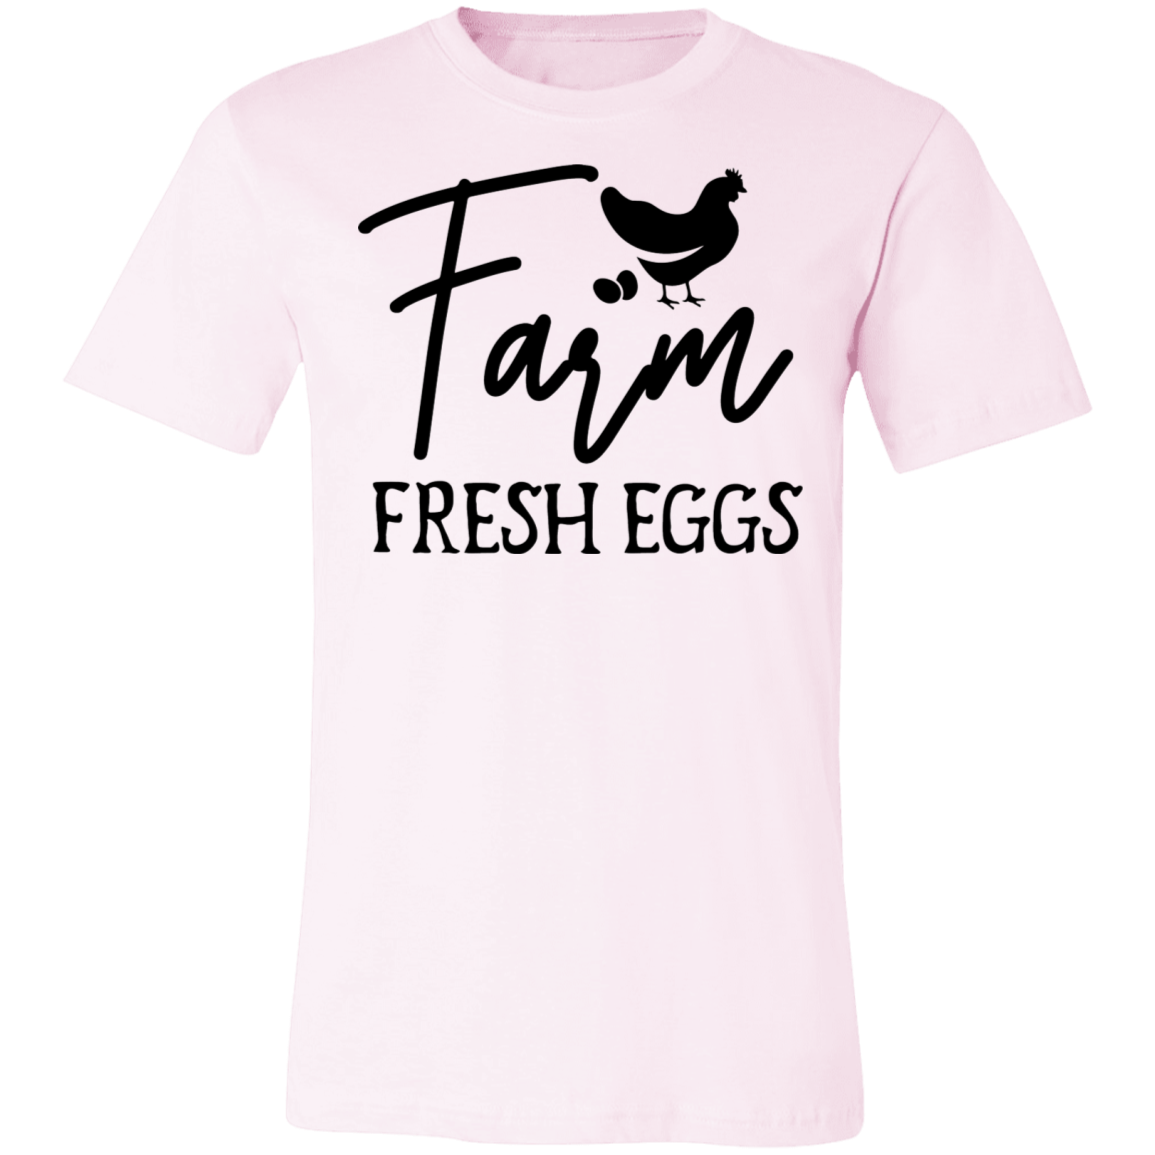 Farm Fresh Eggs Tee